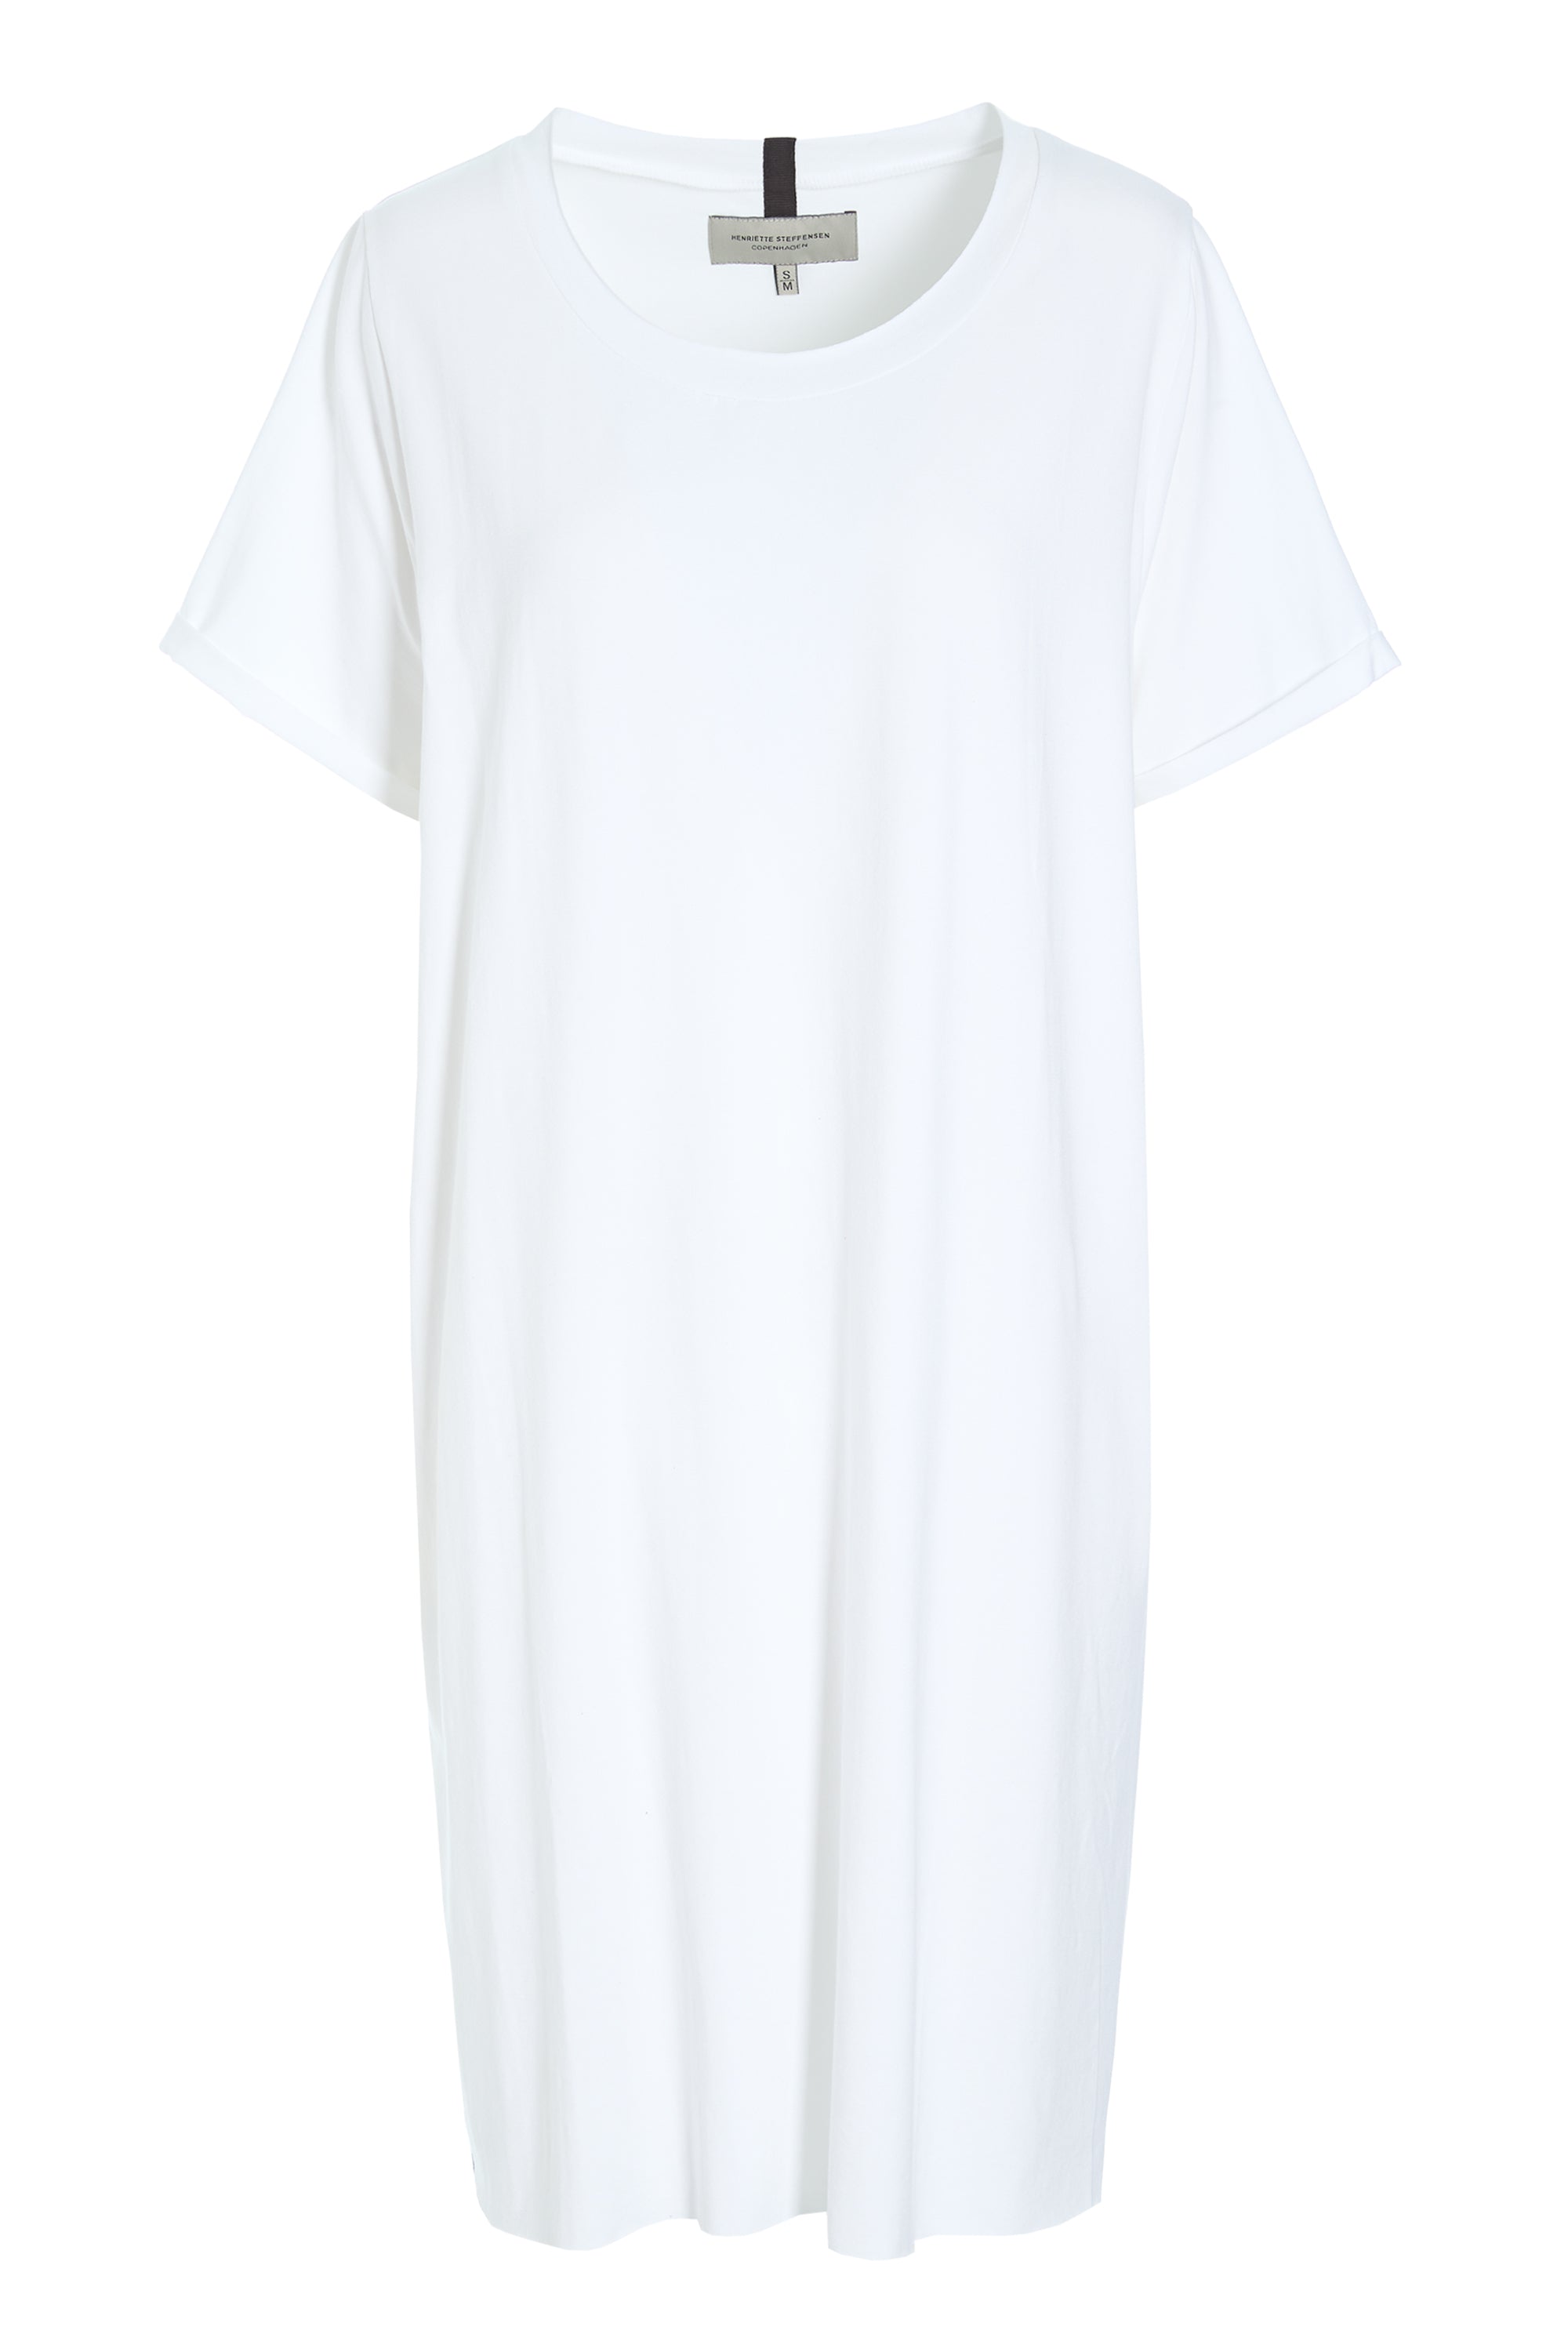 HENRIETTE STEFFENSEN COPENHAGEN DRESS - 98050 DRESSES jersey WHITE 816